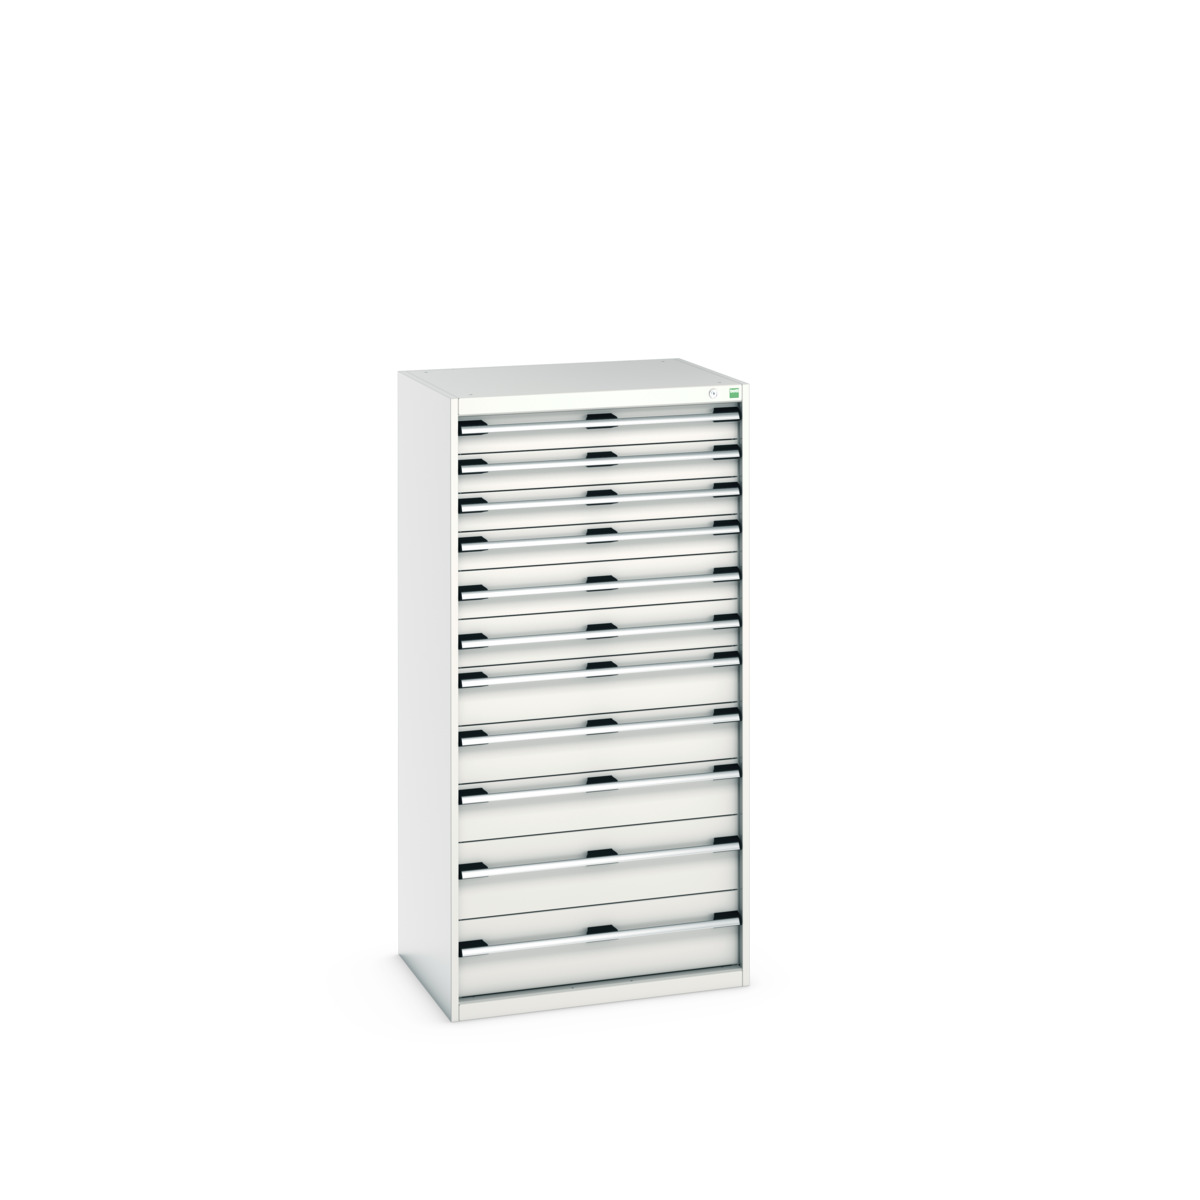 40020069.16V - cubio drawer cabinet